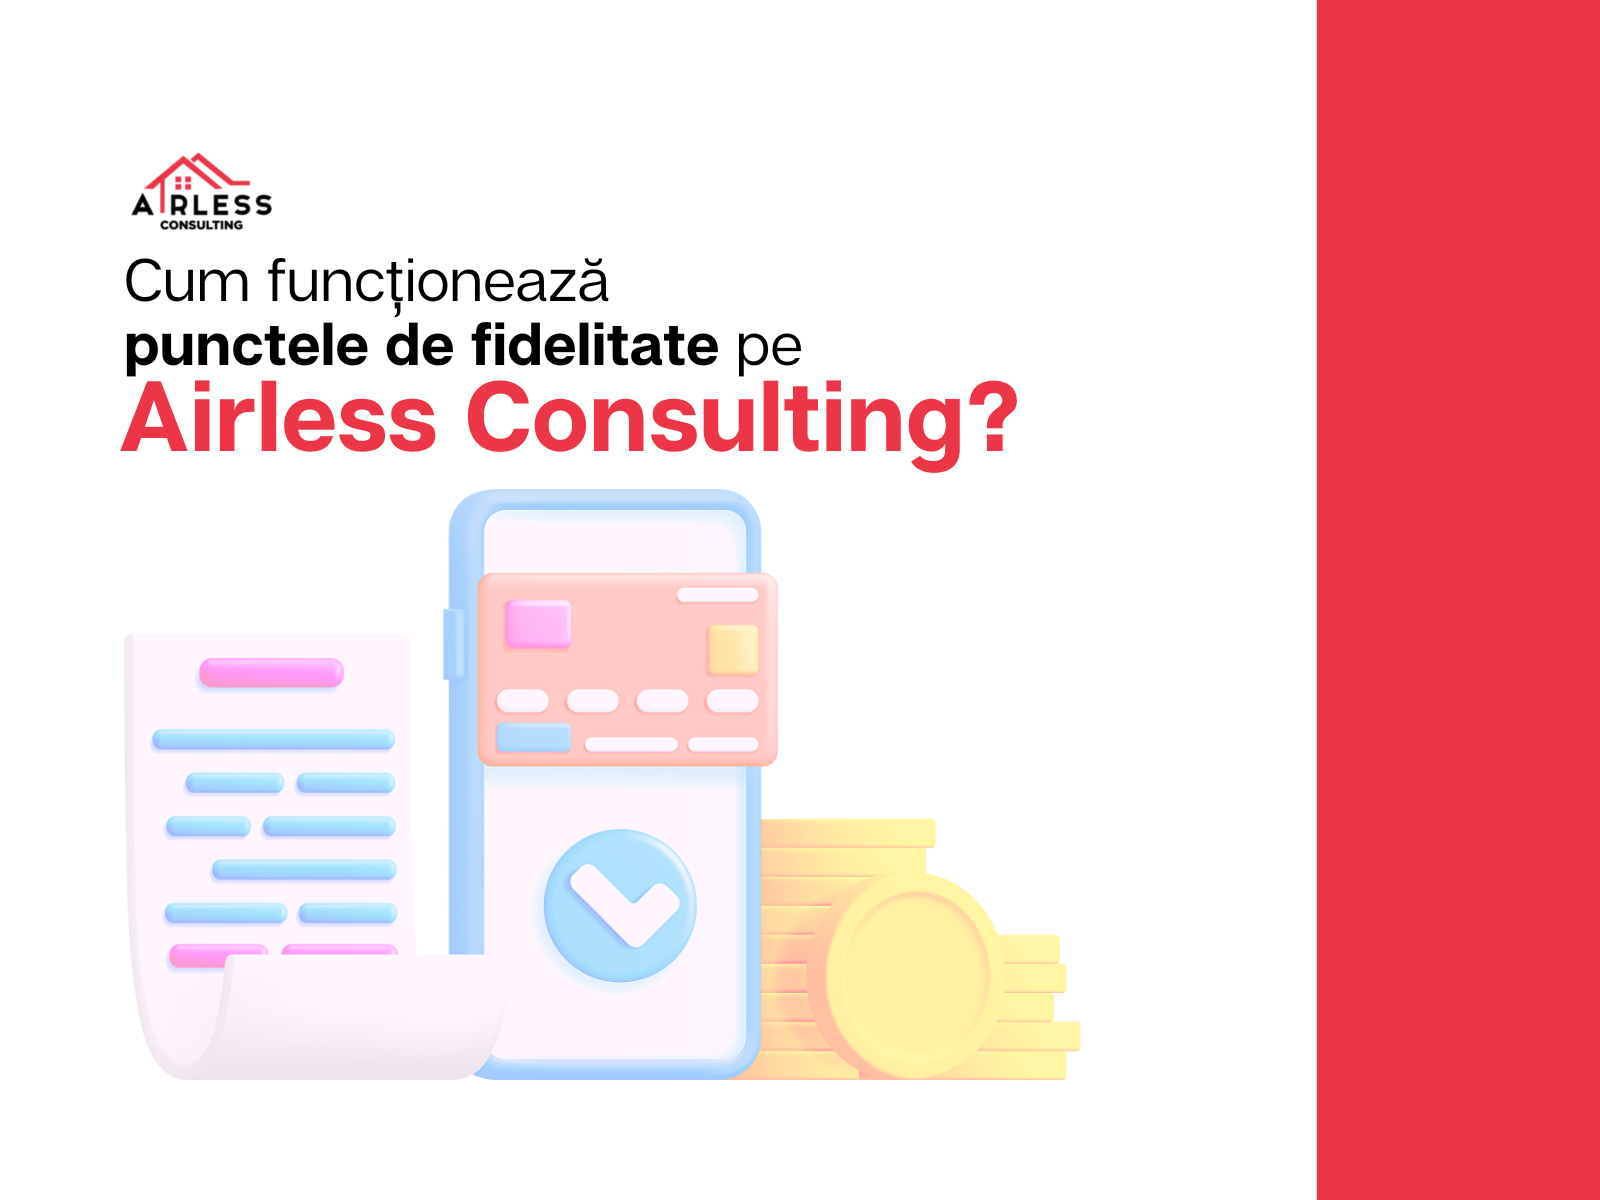 Cum functioneaza punctele de fidelitate pe Airless Consulting?